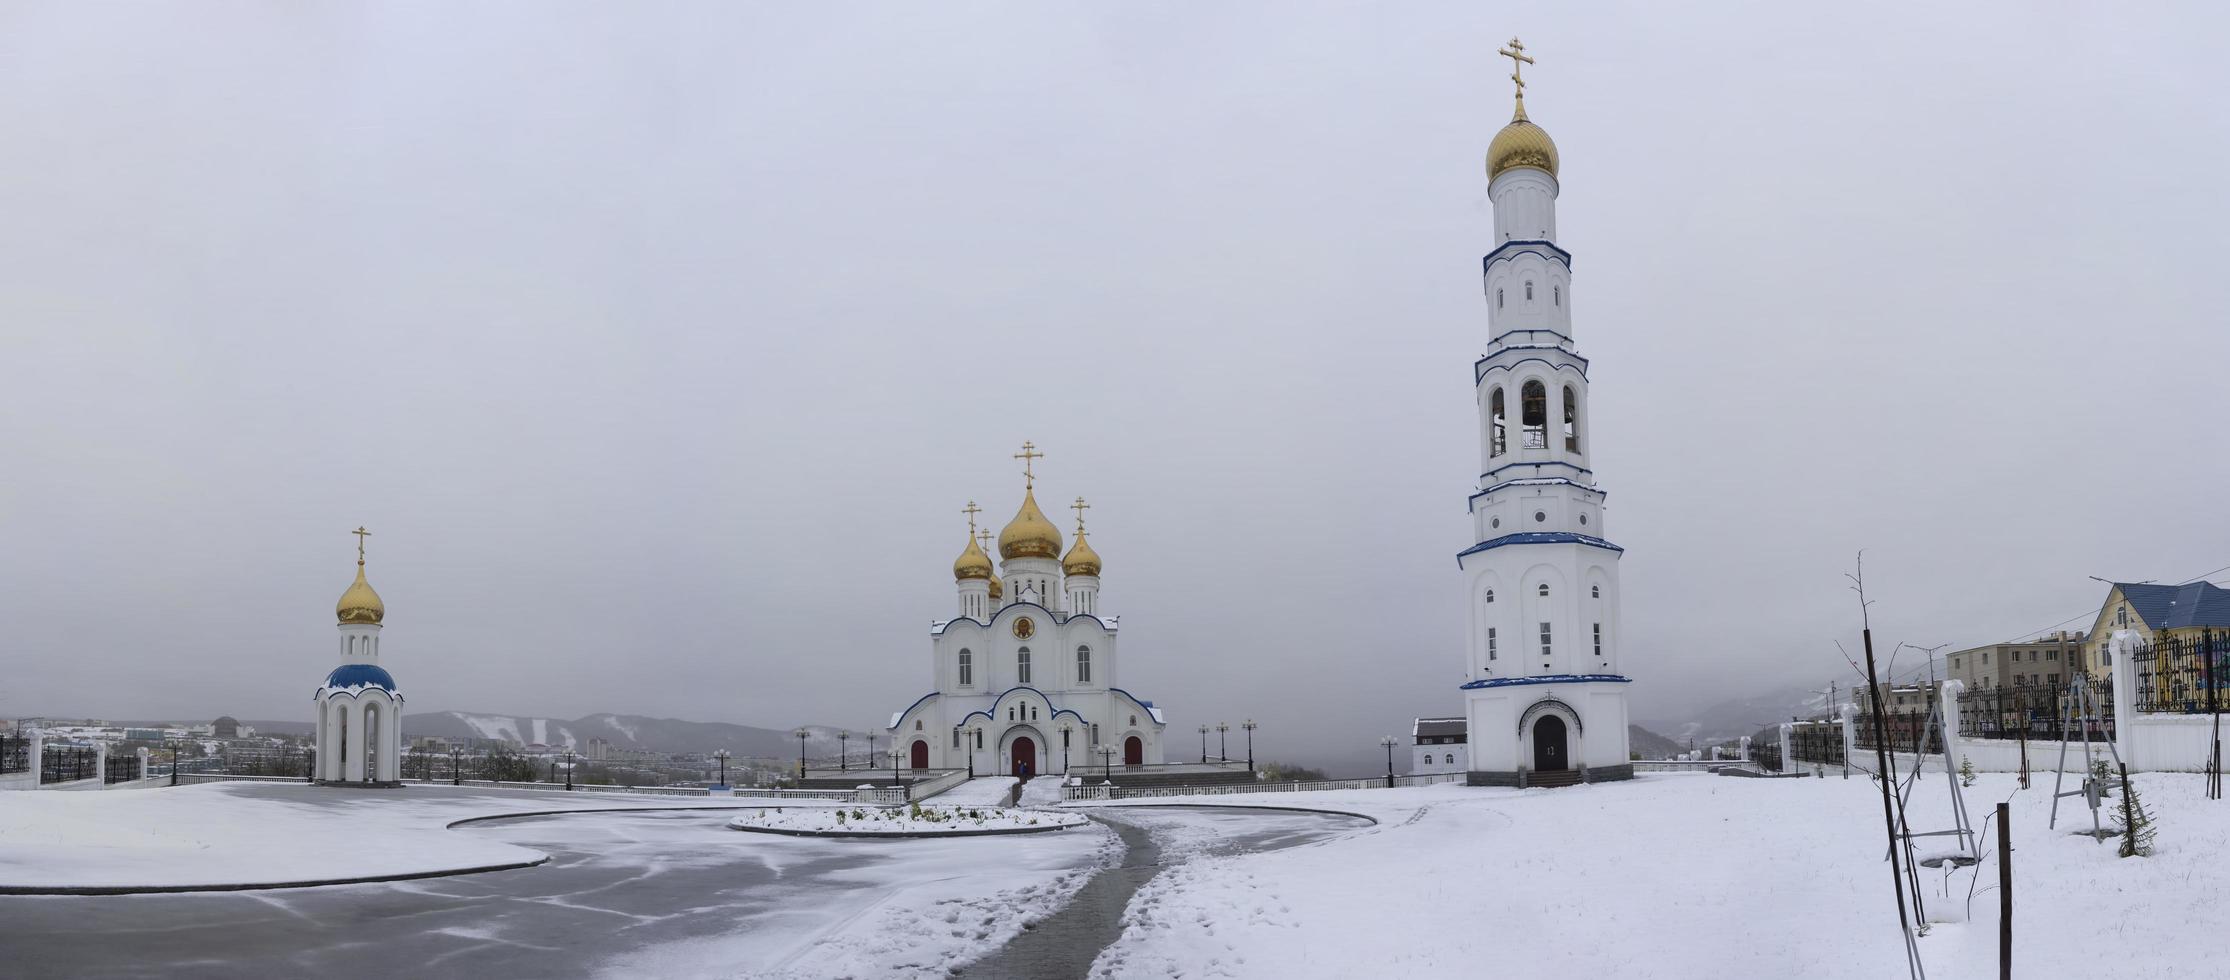 kathedraal van de heilige drie-eenheid in petropavlovsk-kamchatsky, rusland foto